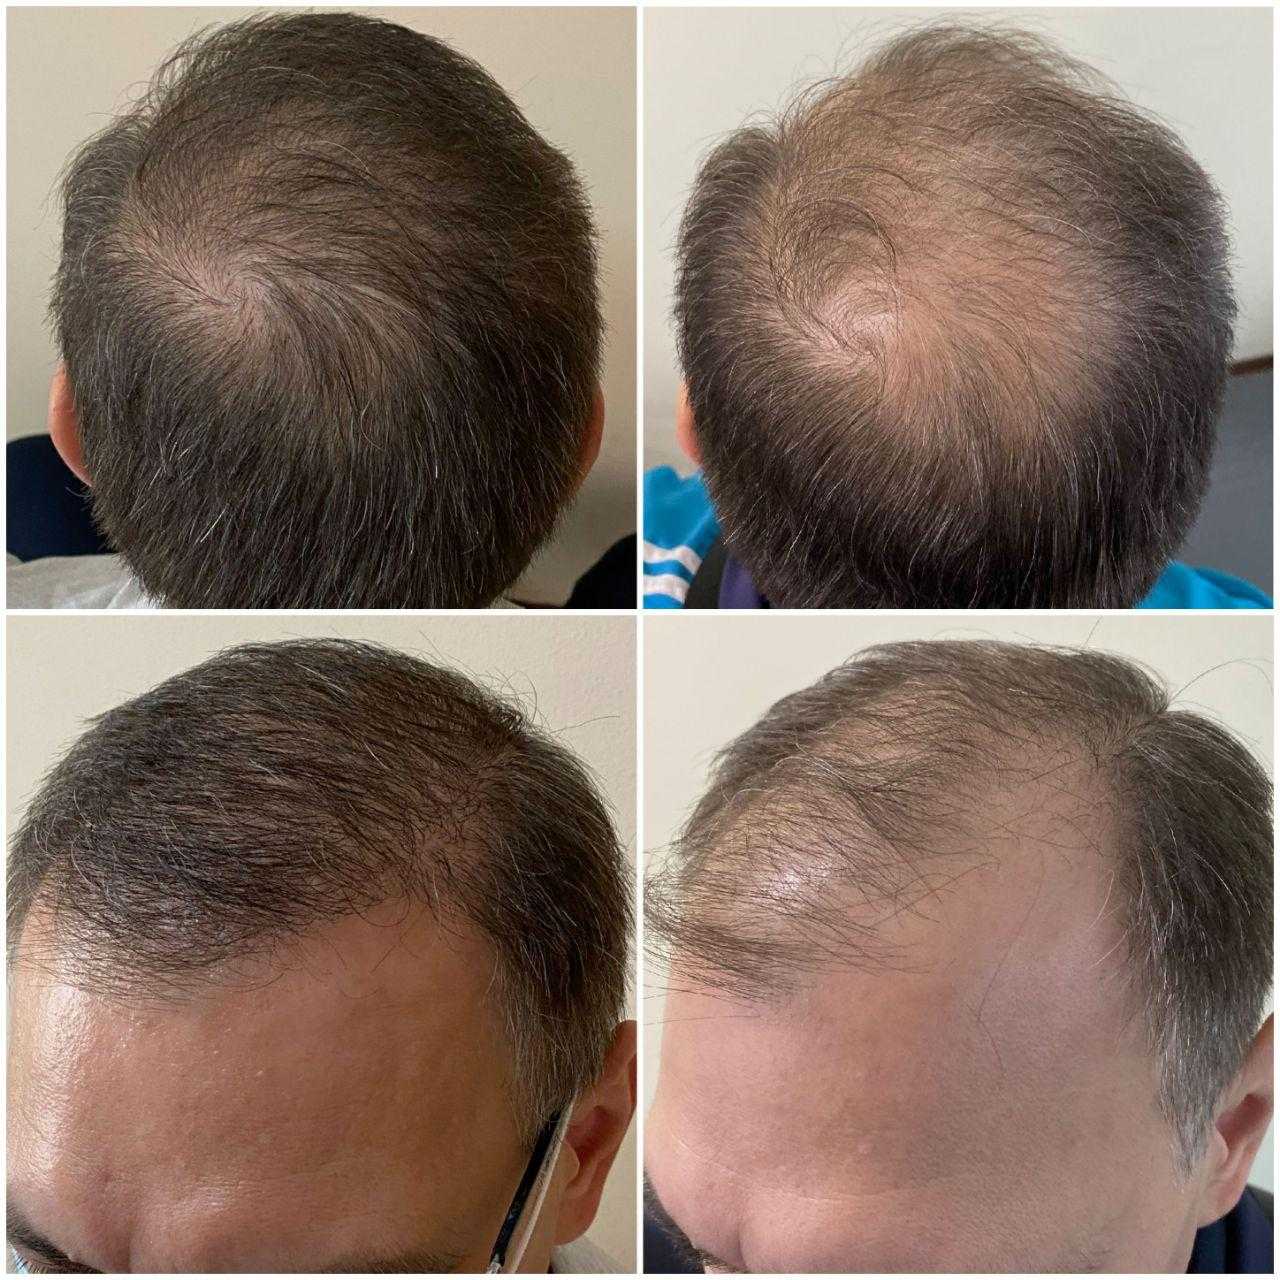 Центр пересадки волос. Графт трансплантация волос. Пересадка волос до и после. Трансплантация волос методом fue.